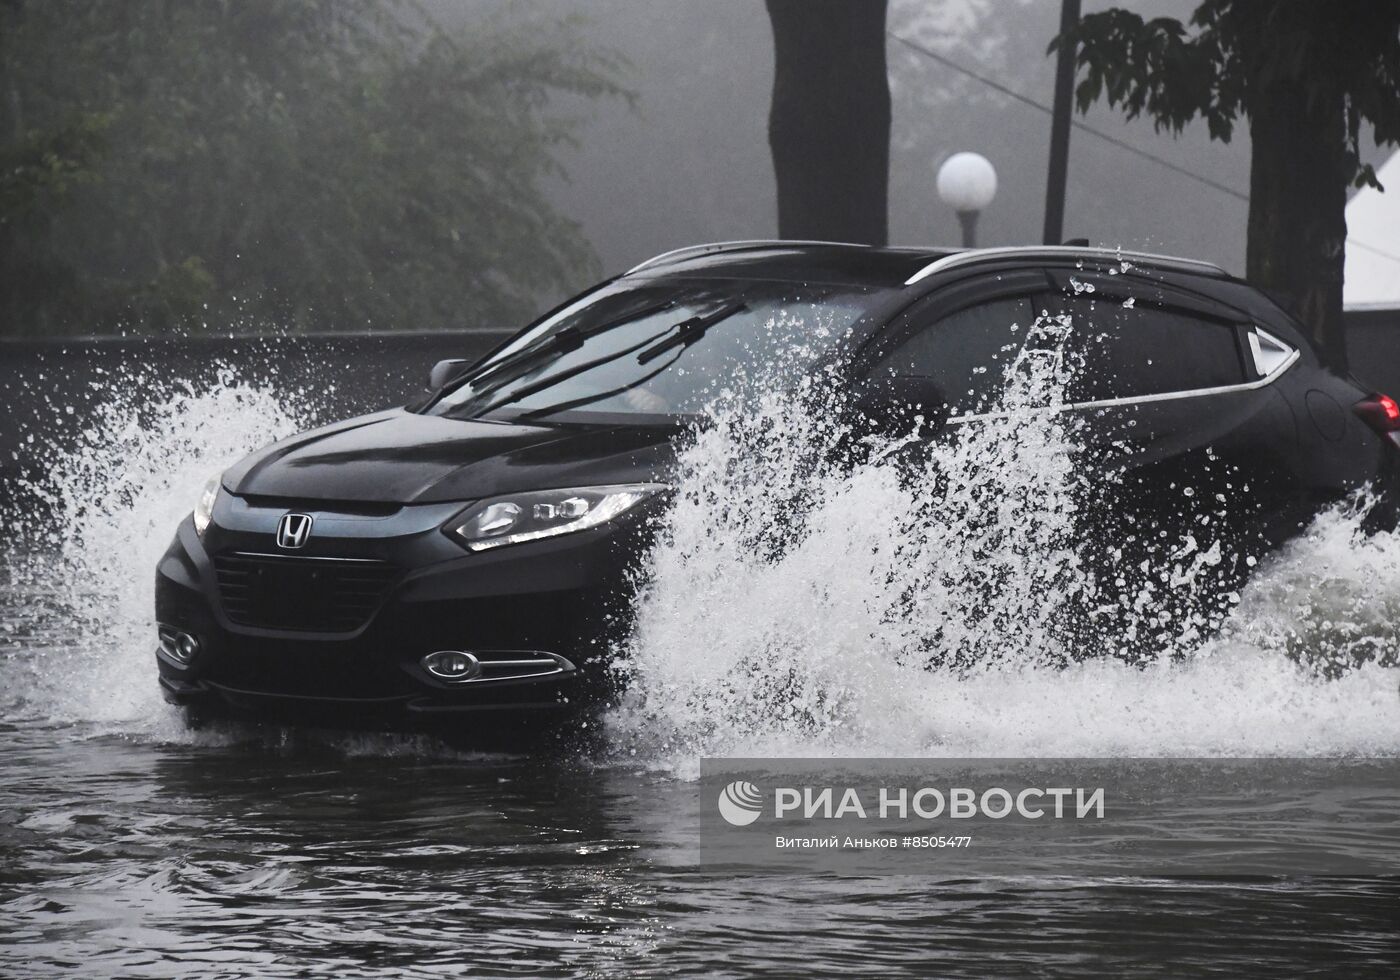 Владивосток накрыл очередной циклон